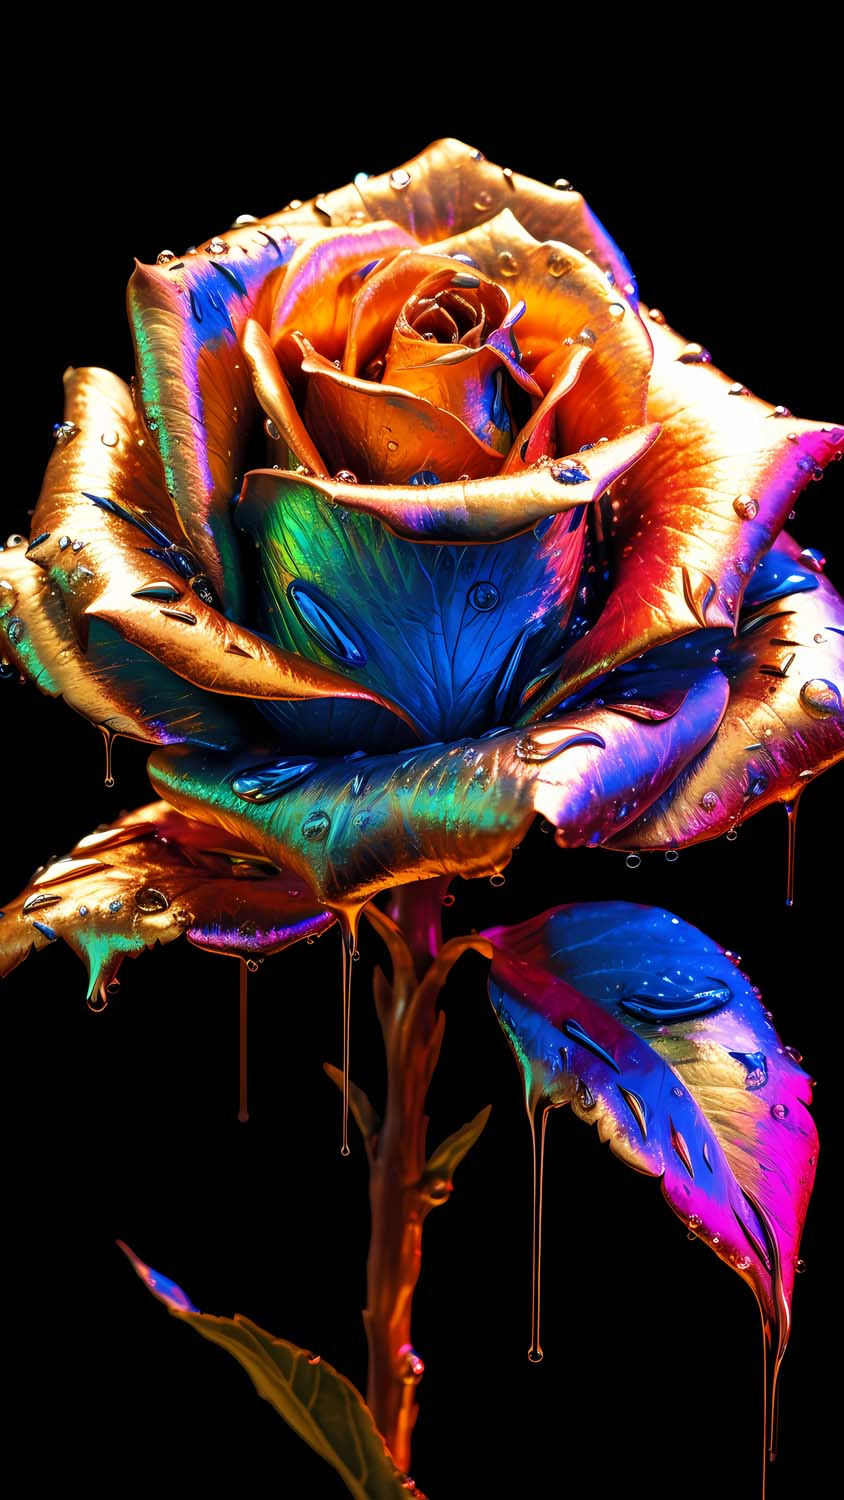 100 Free Golden Rose  Nature Images  Pixabay